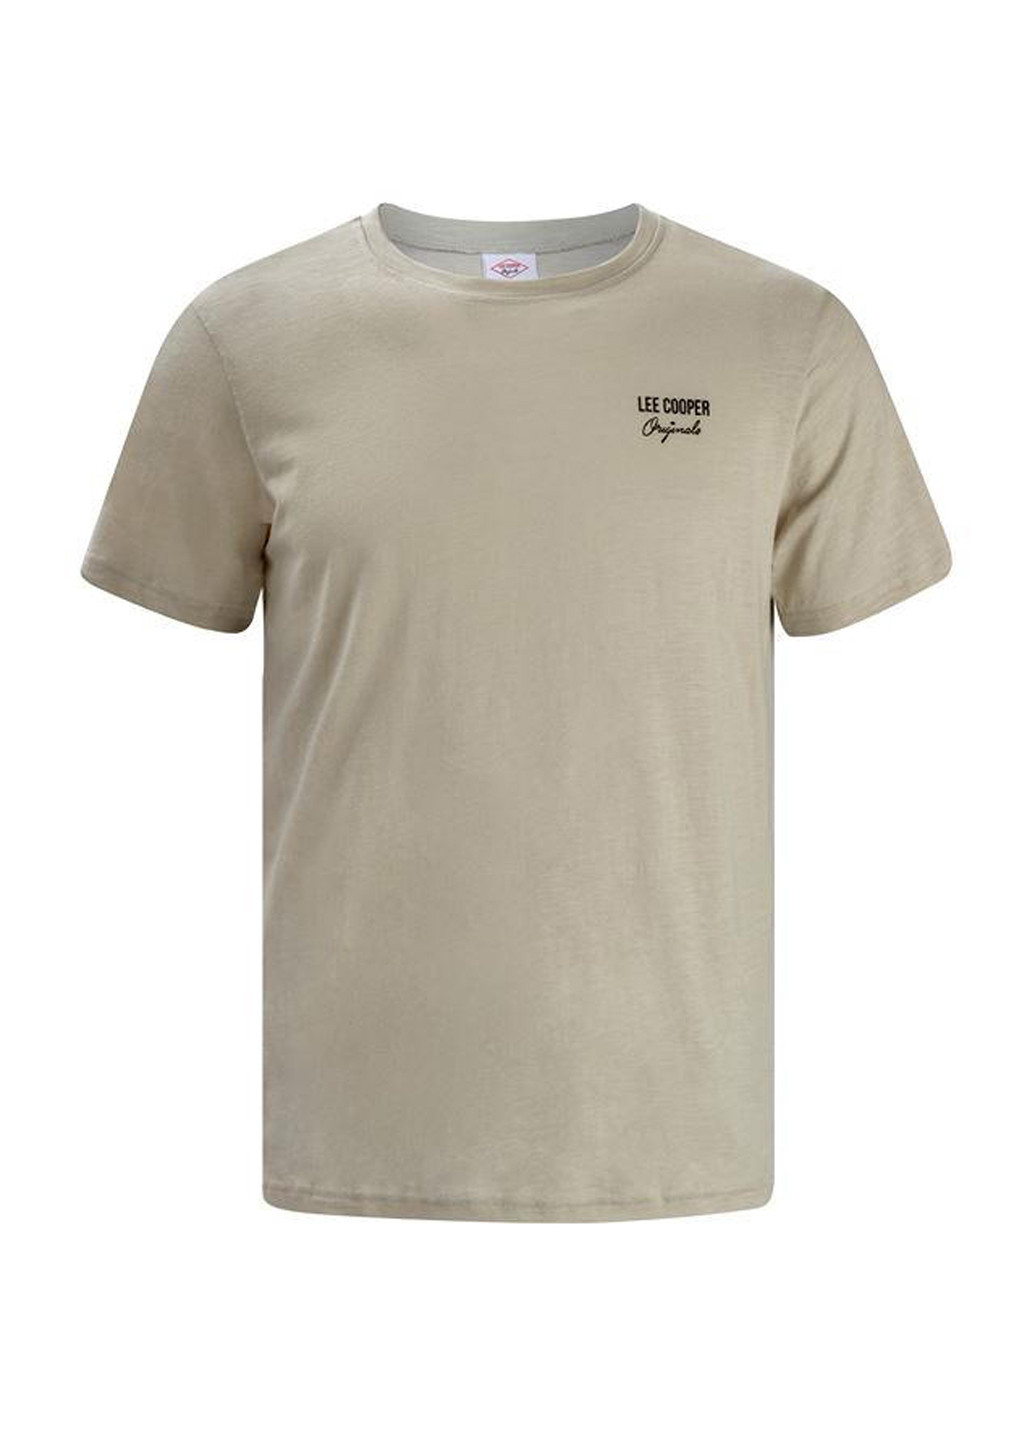 Хаки (оливковая) футболка Lee Cooper